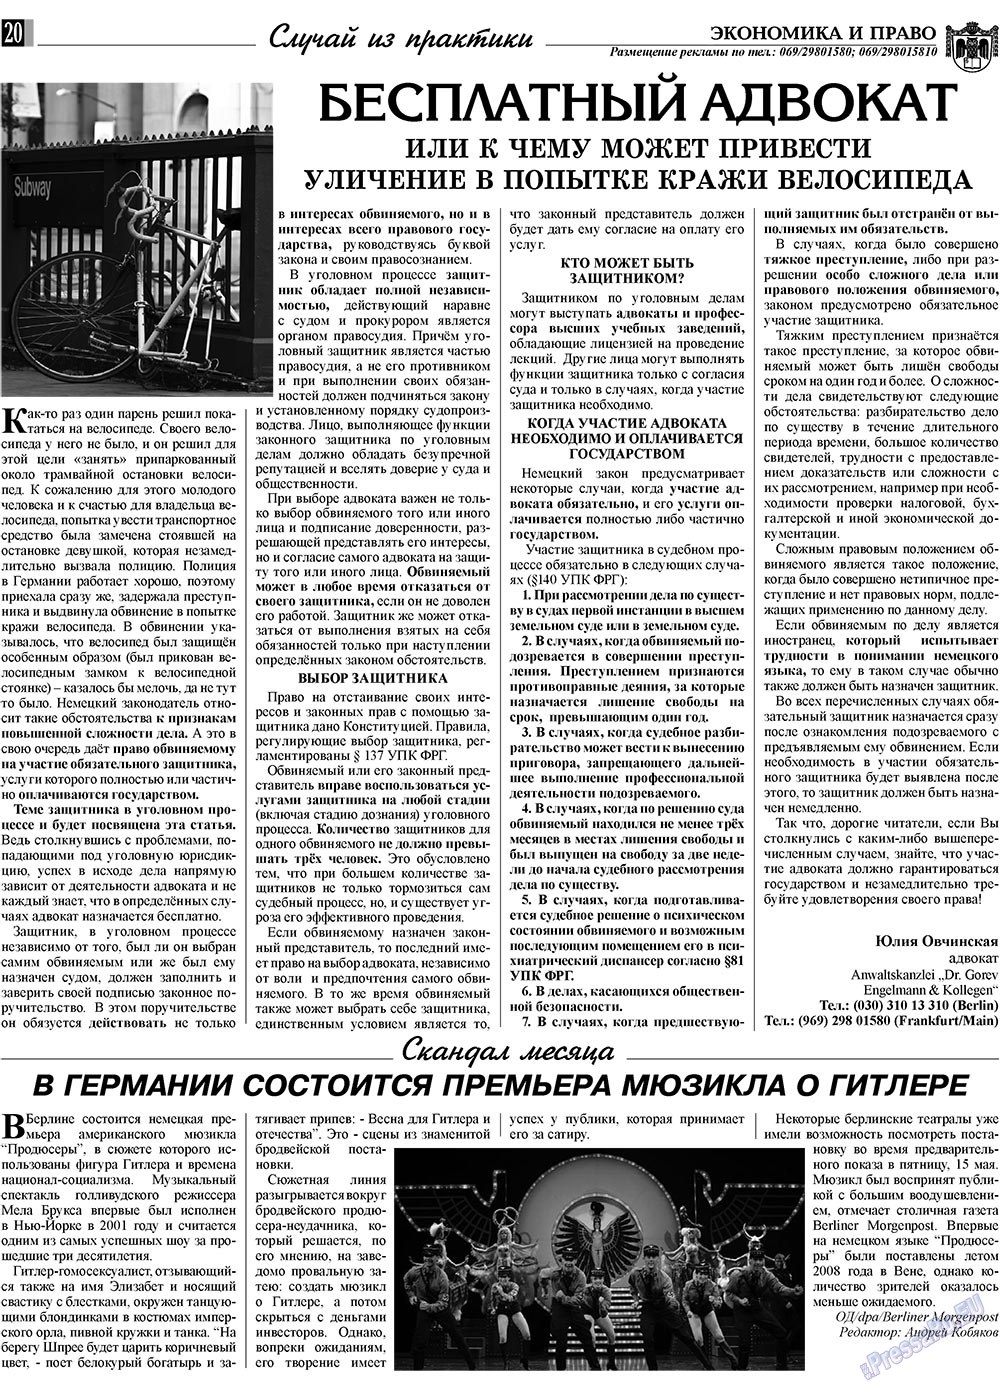 Экономика и право, газета. 2009 №6 стр.20